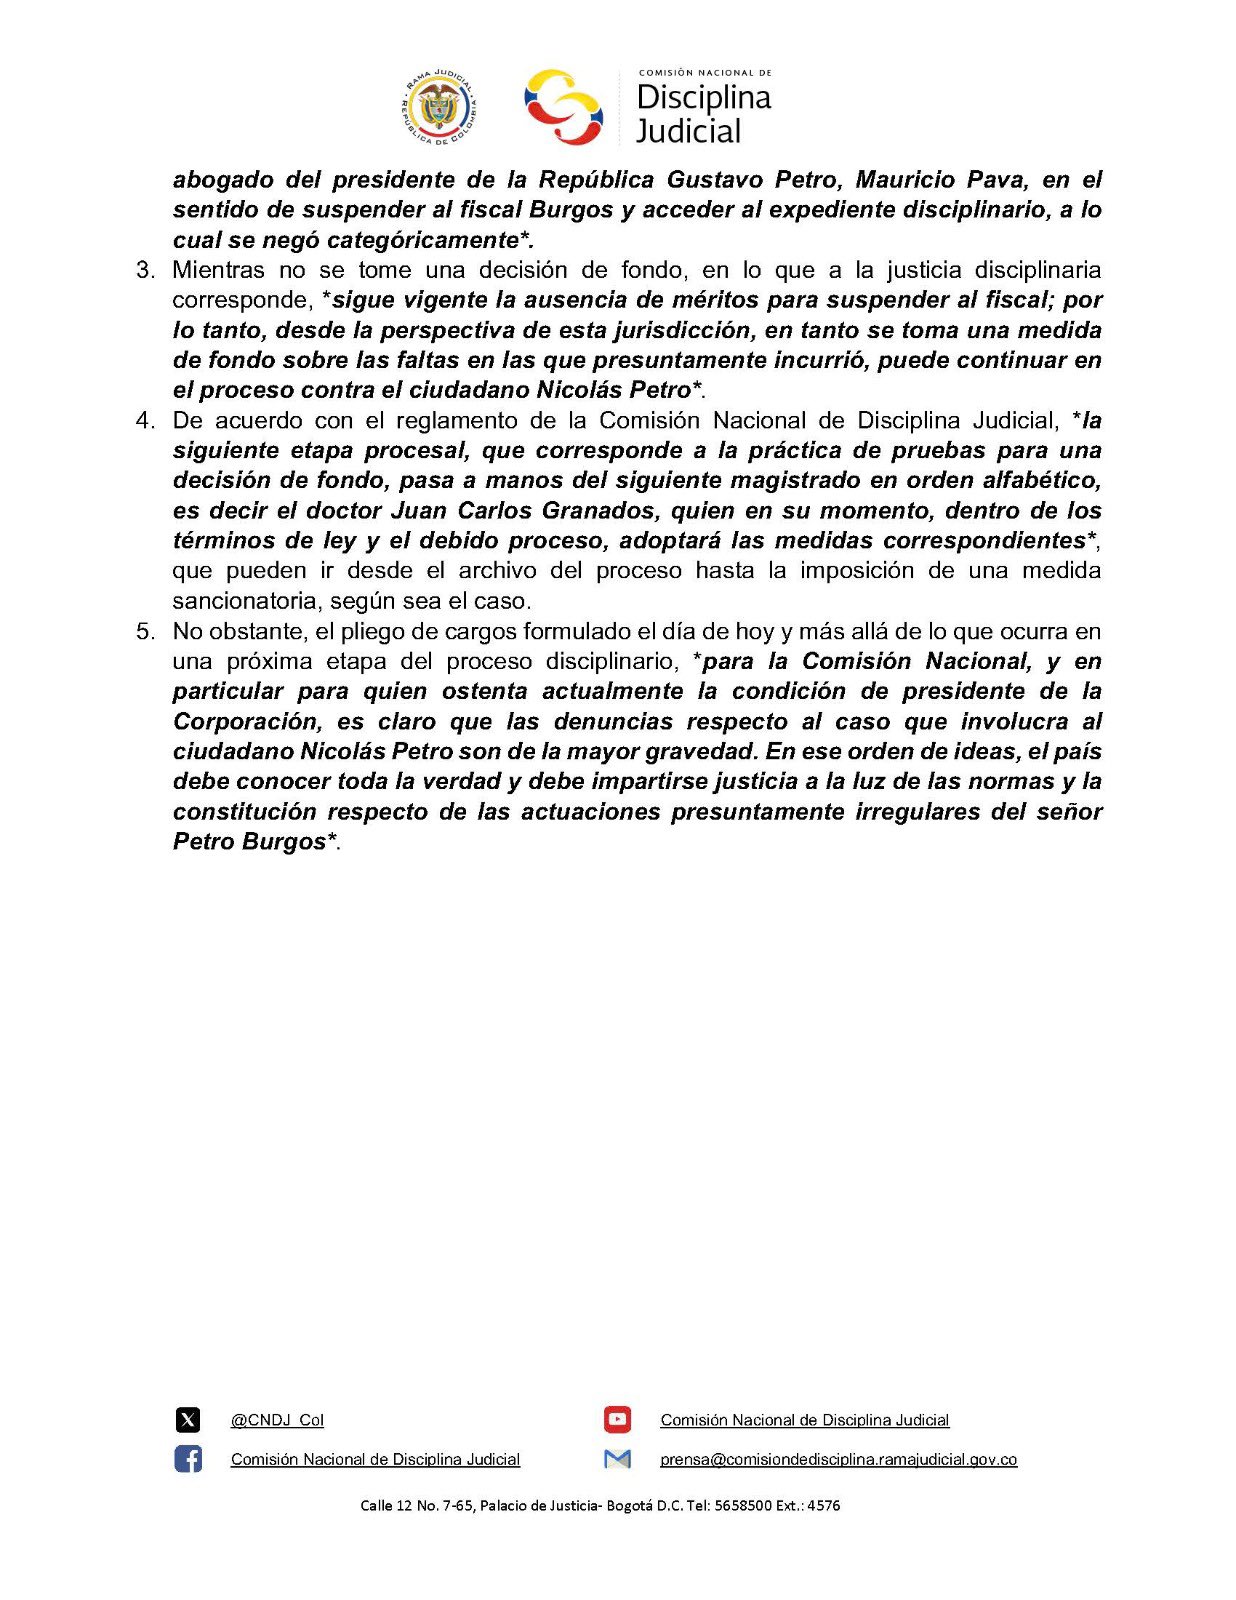 El comunicado de la Comisión Nacional de Disciplina Judicial.